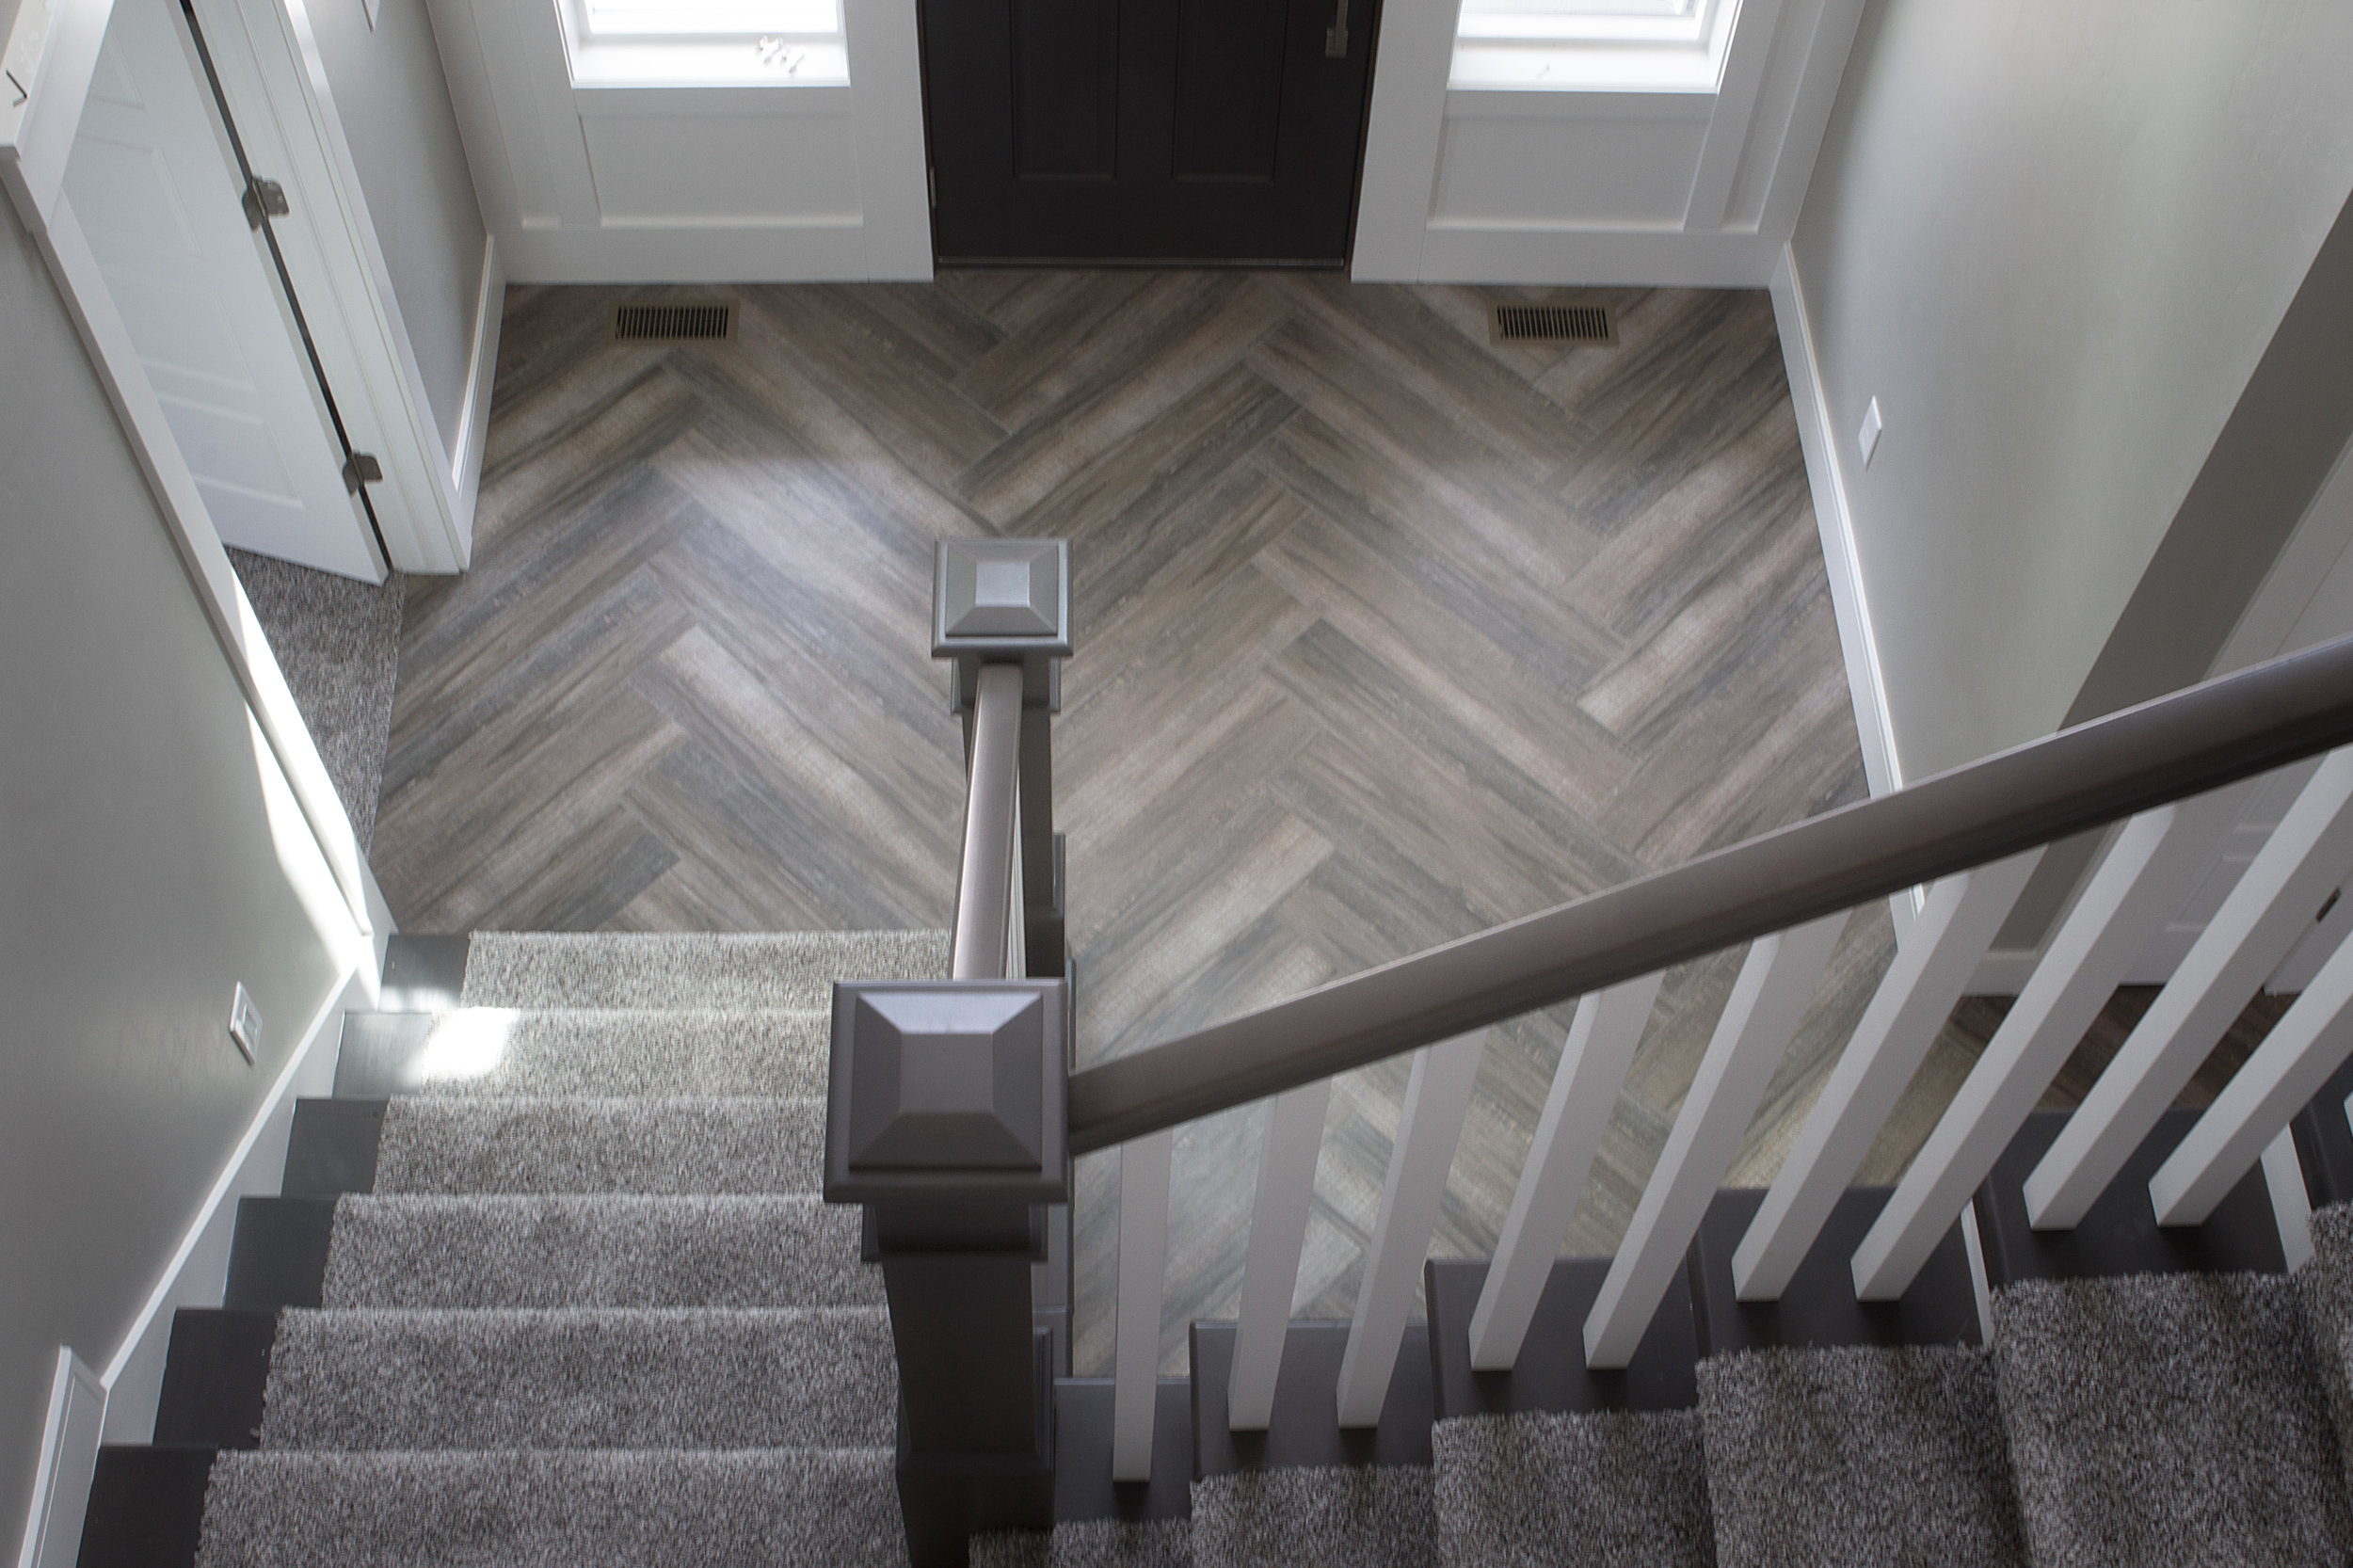 Herringbone Wood Texture Tile Floor, Tile On Wood Floor Installation